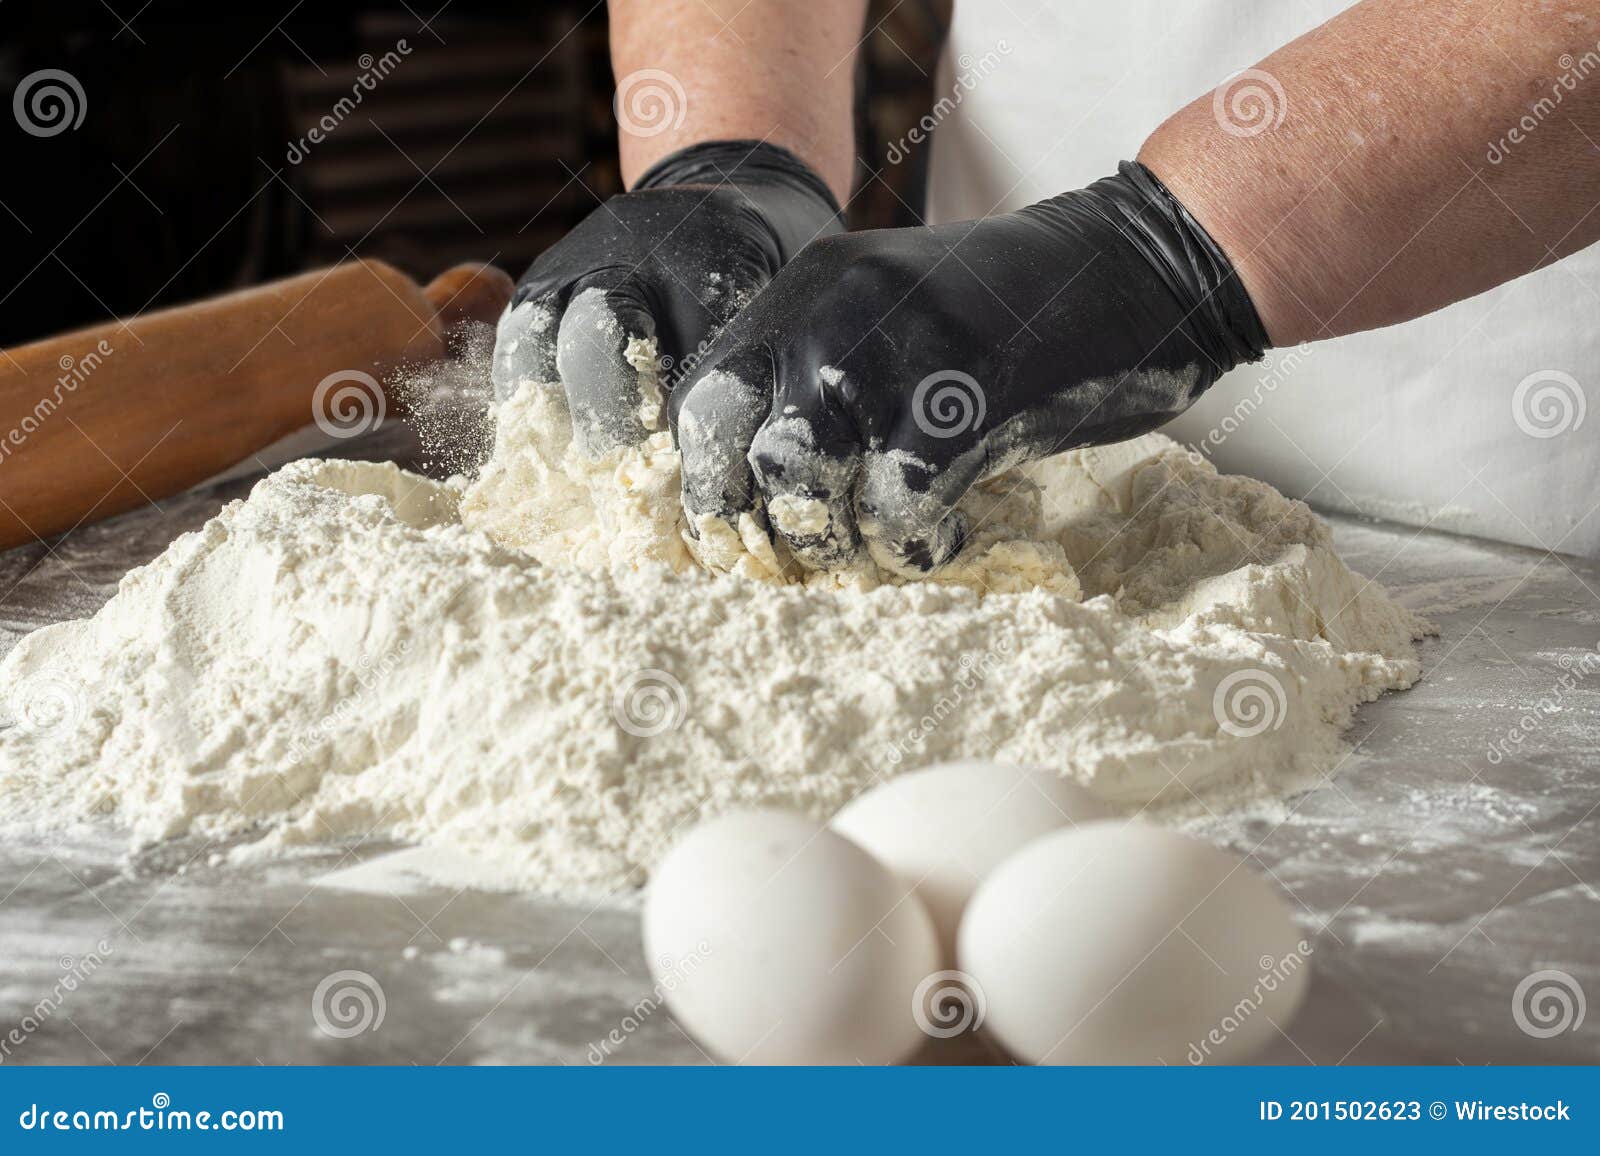 El Primer Disparo De Un Panadero Que Mezclaba La Harina Con Los Huevos Para  Hornear Un Pastel Imagen de archivo - Imagen de huevo, harina: 201502623